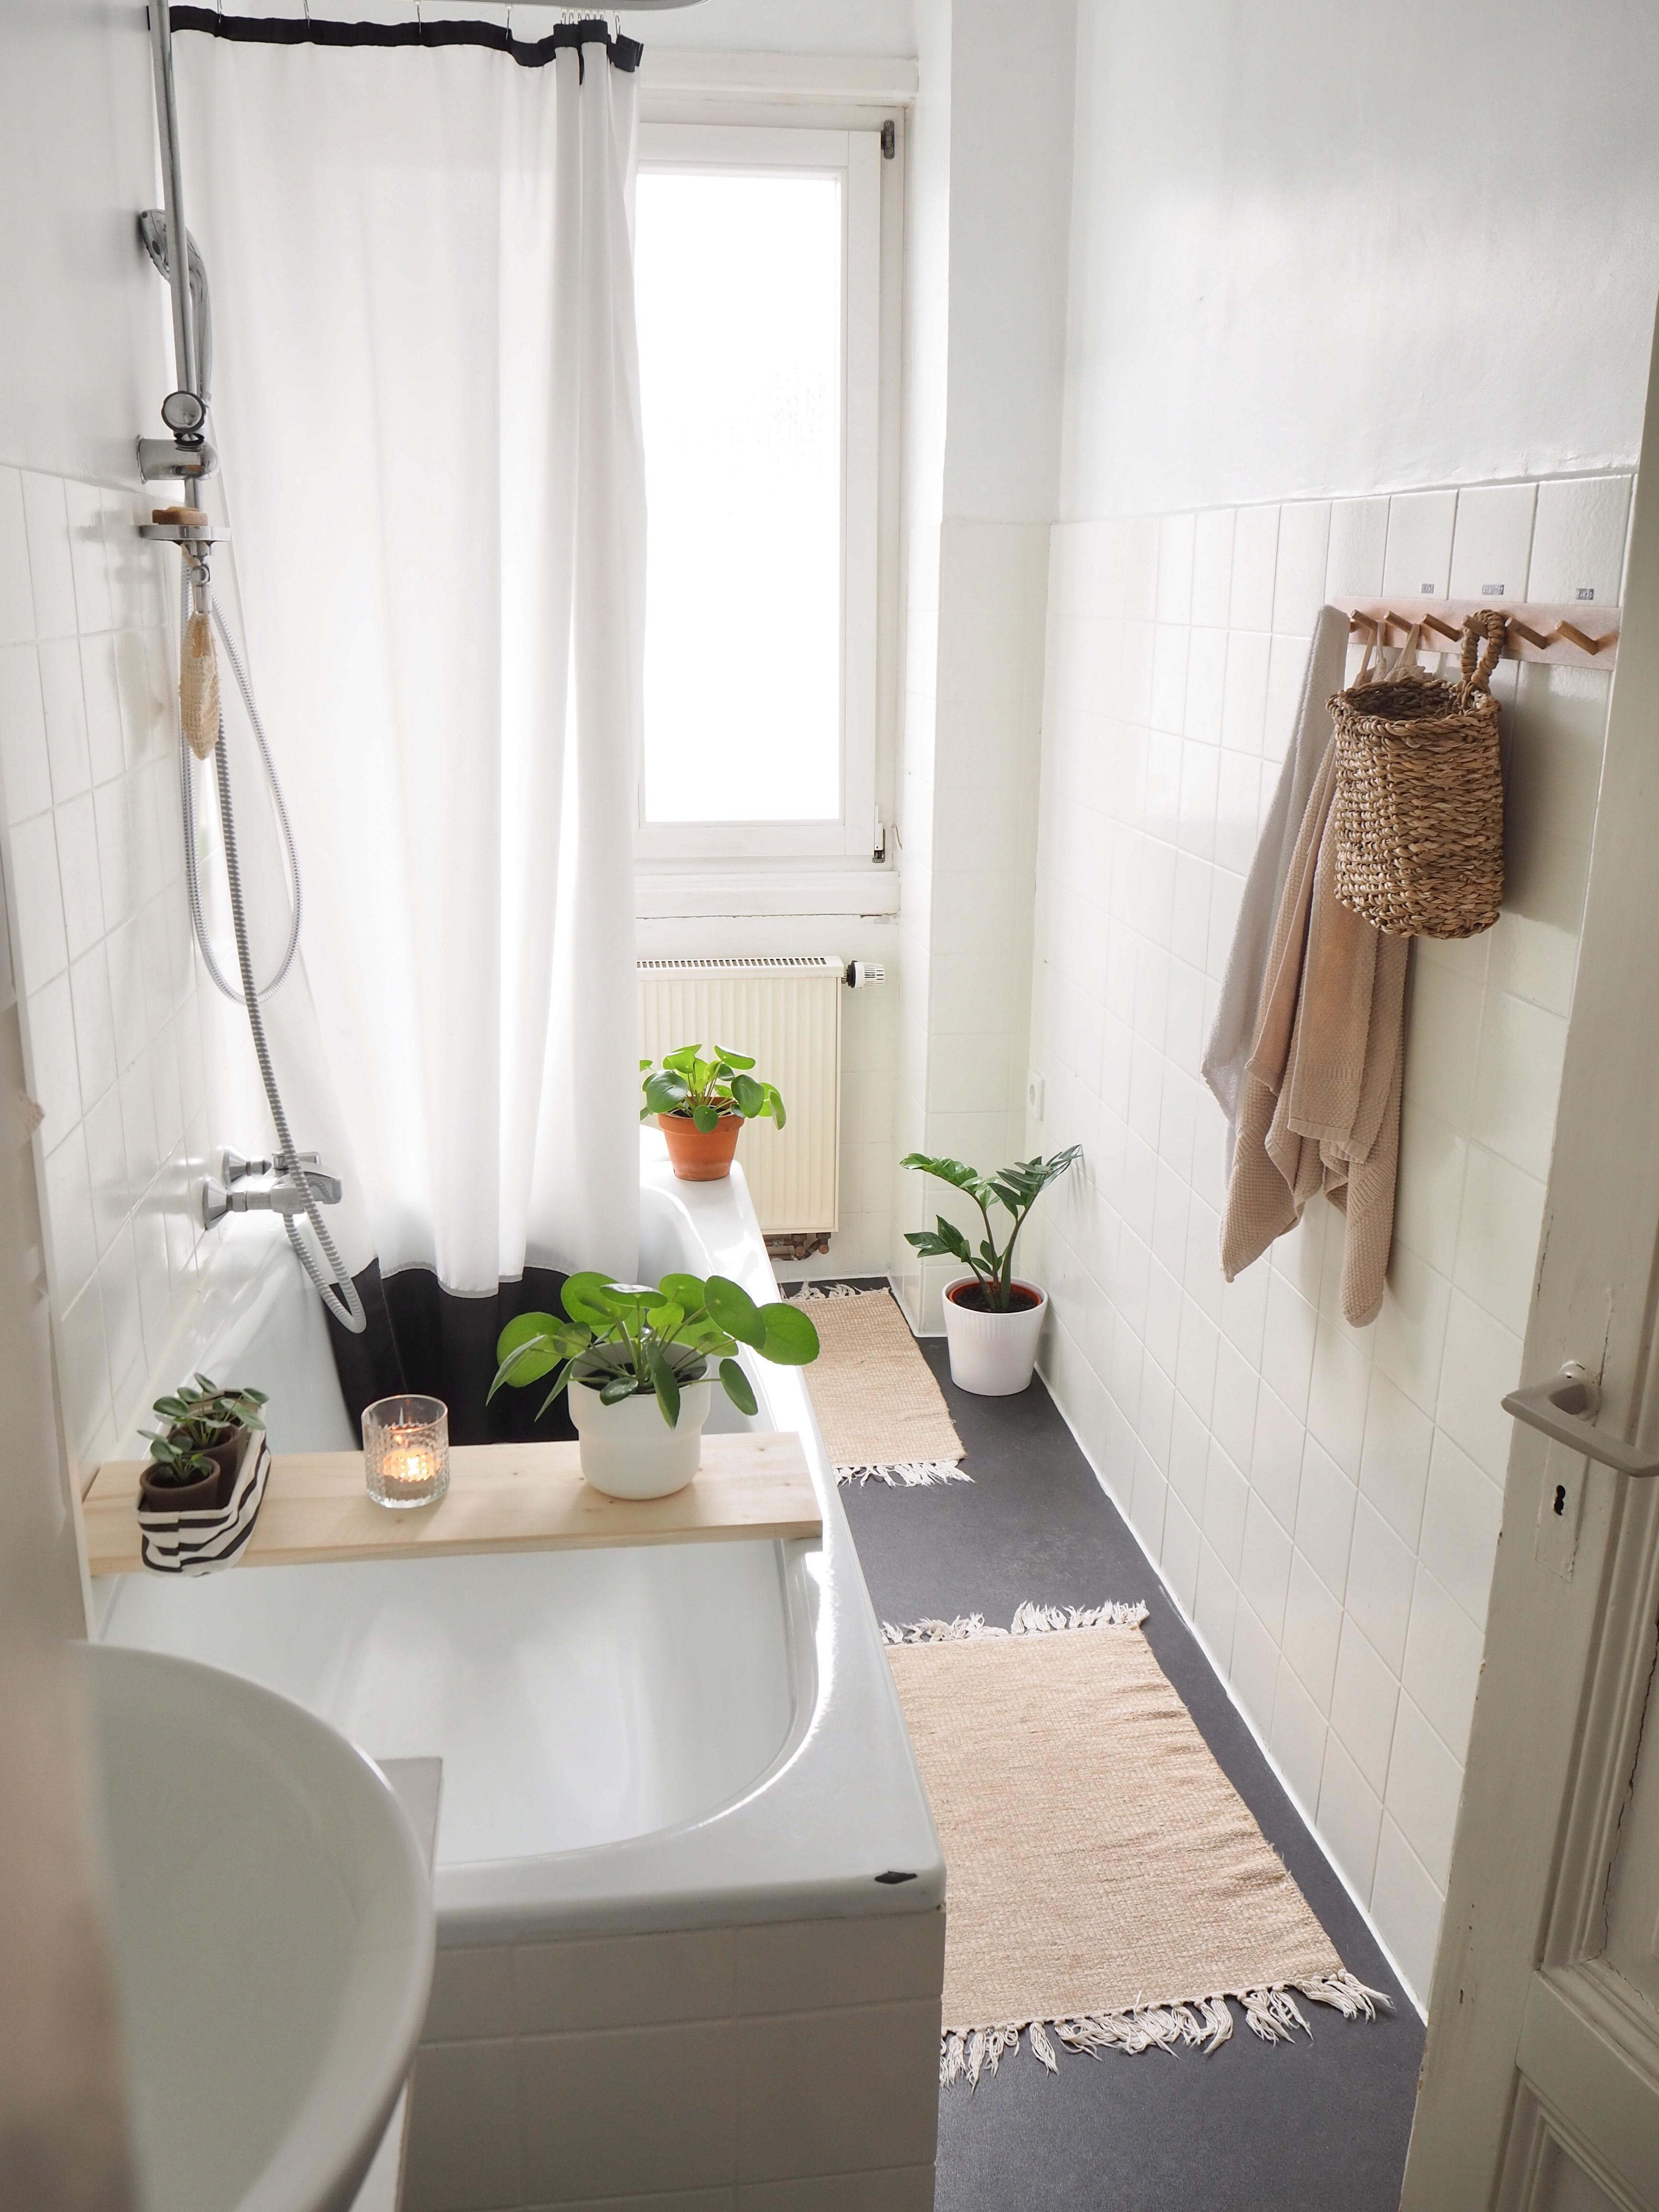 #badezimmer #smallbathroom #schmalesbad #altbaubad #altbau #ablage #diekraftderpflanzenwelt